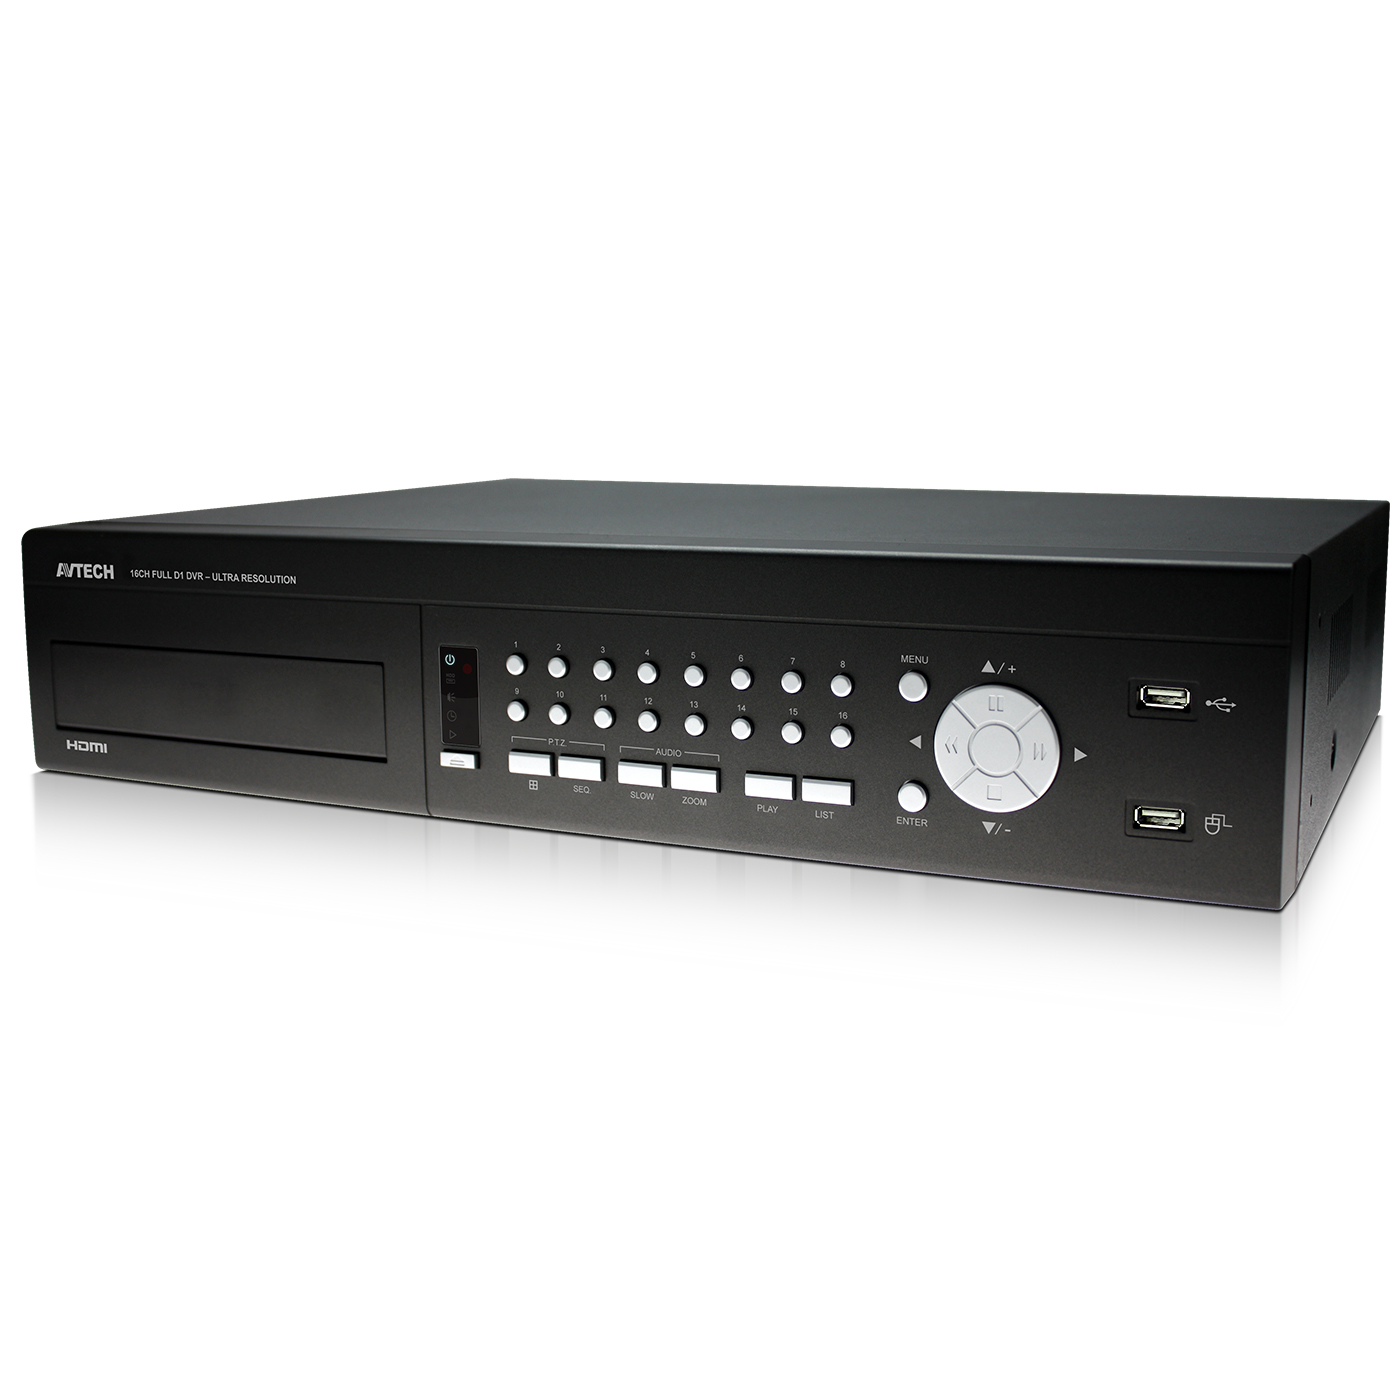 PVR16H (архив)|16ти-канальный видеорегистратор с записью 960H или Real-Time D1 (DCCS + IVS + PUSH VIDEO)